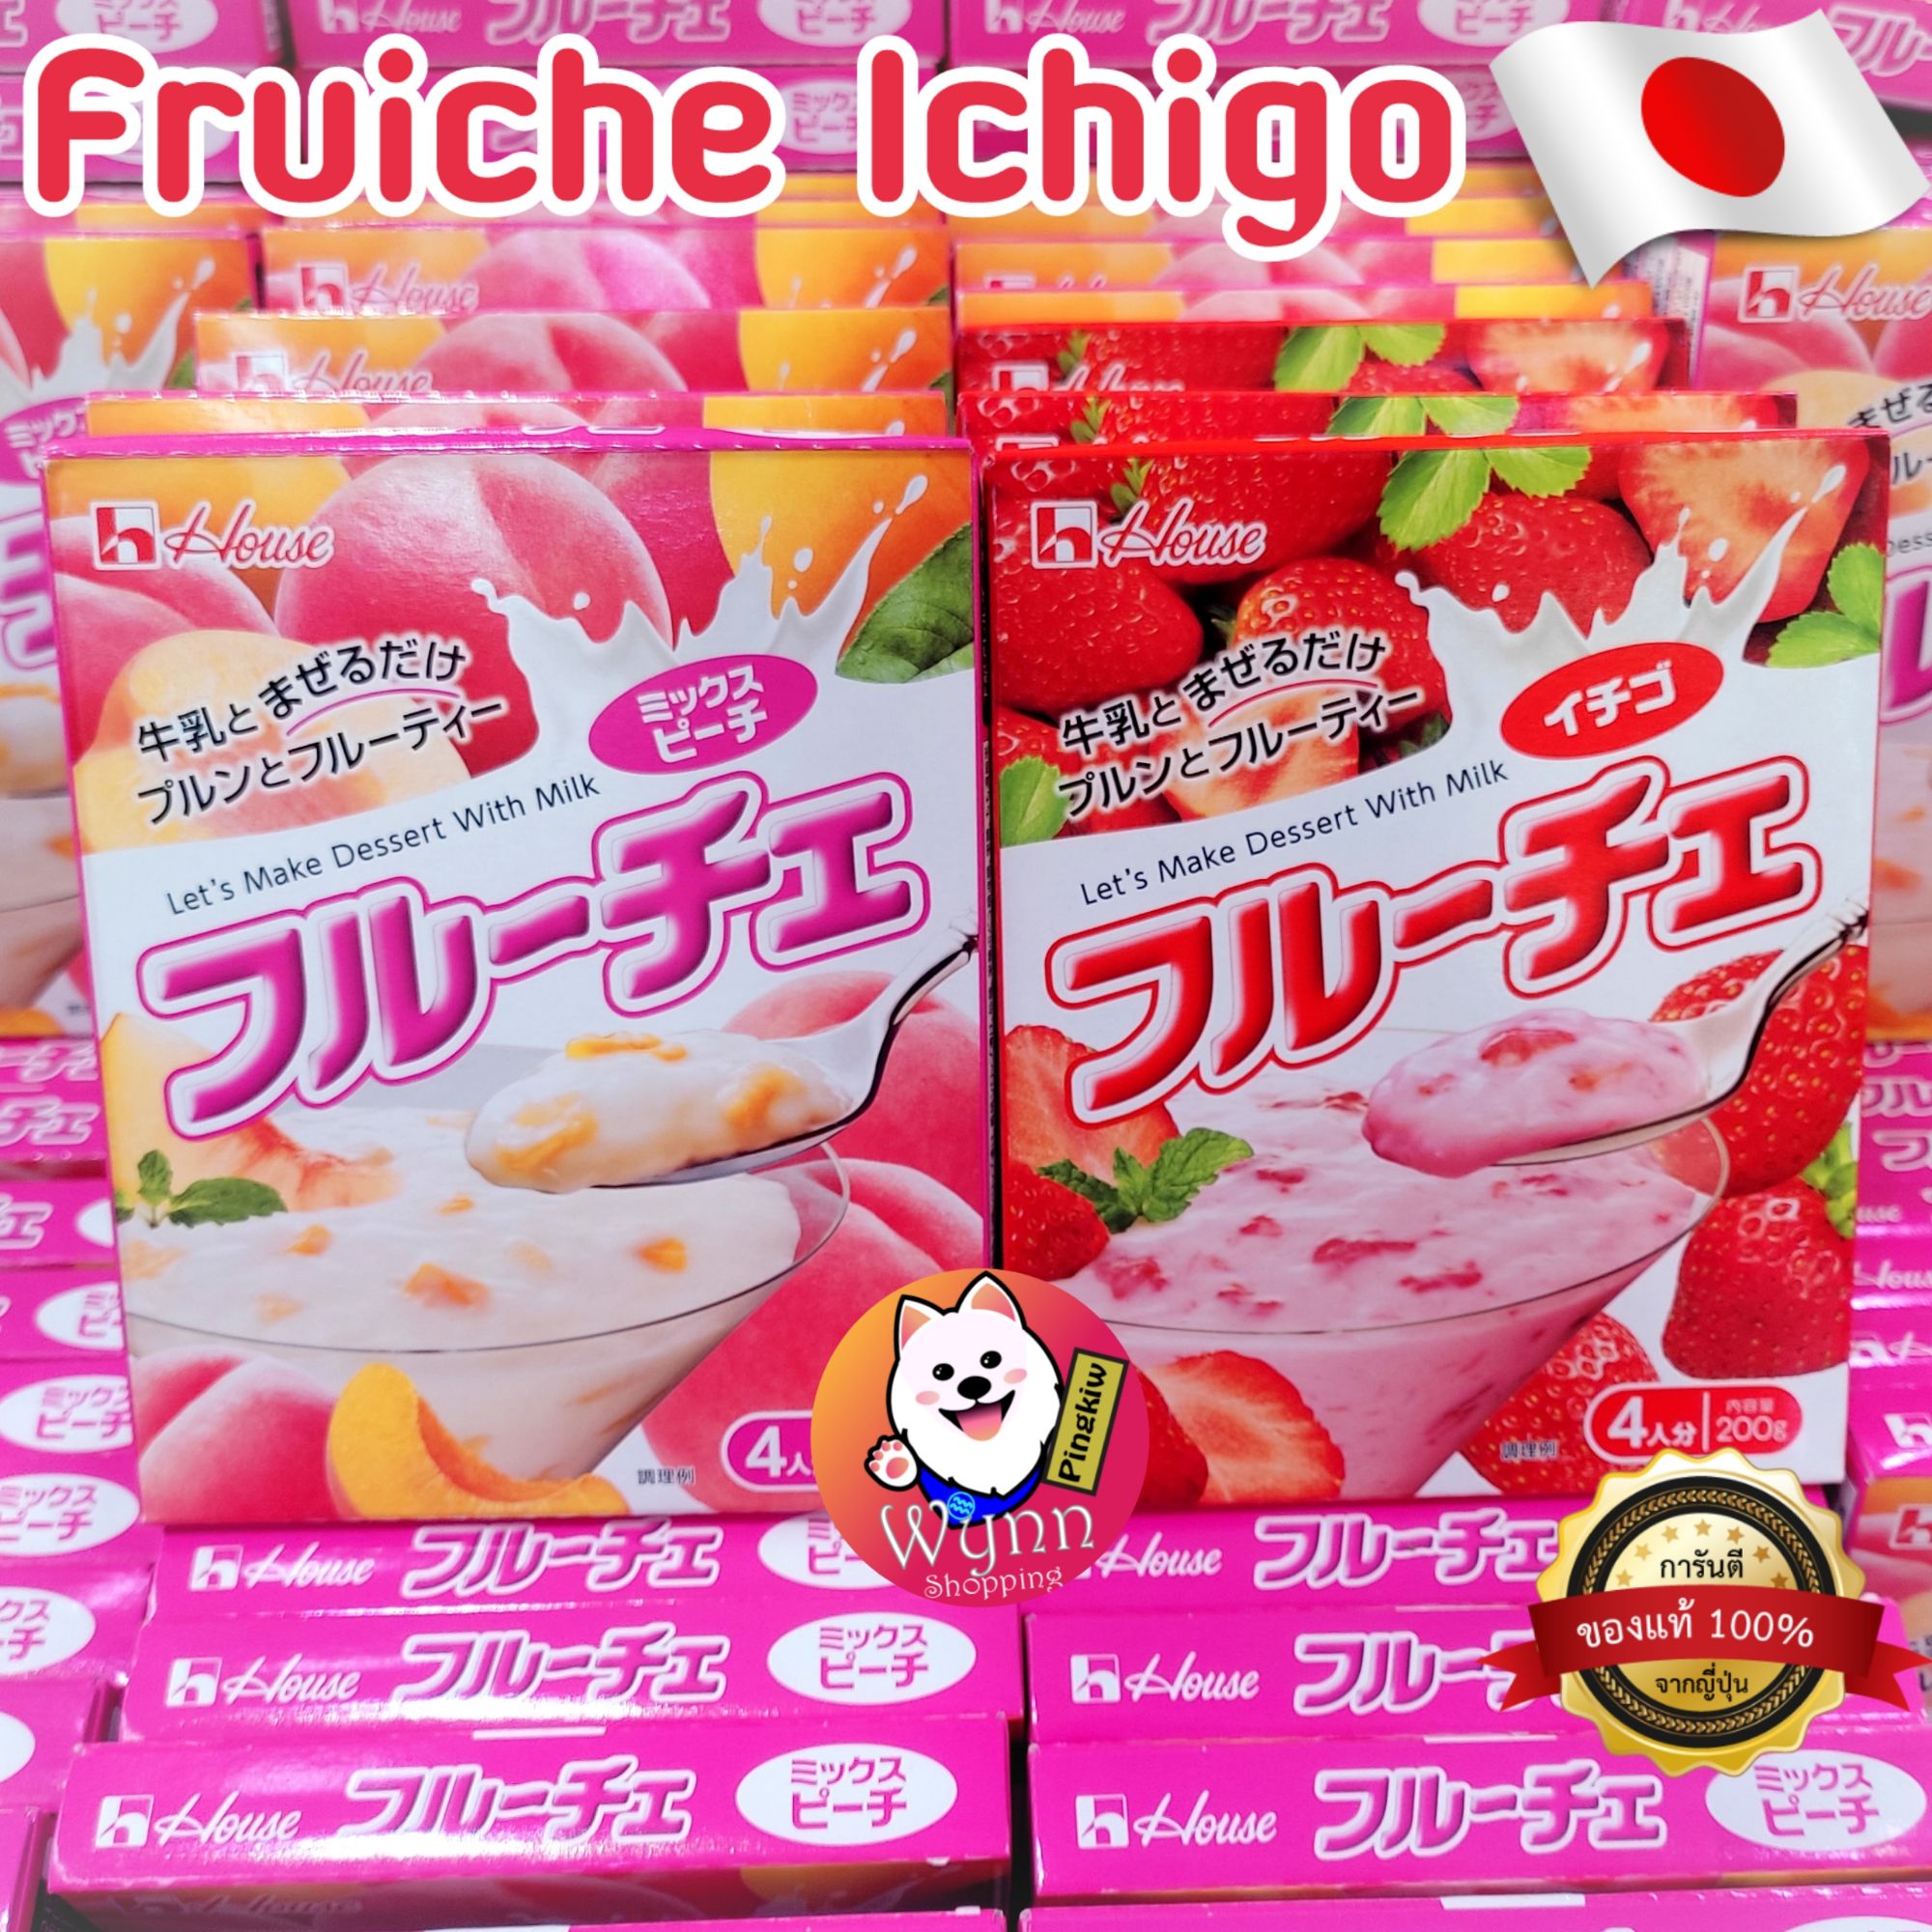 ฟรูเช่ อิชอโกะ Fruiche Ichigo (House Brand) นำเชื่อมสำหรับทำขนมหวานญี่ปุ่น